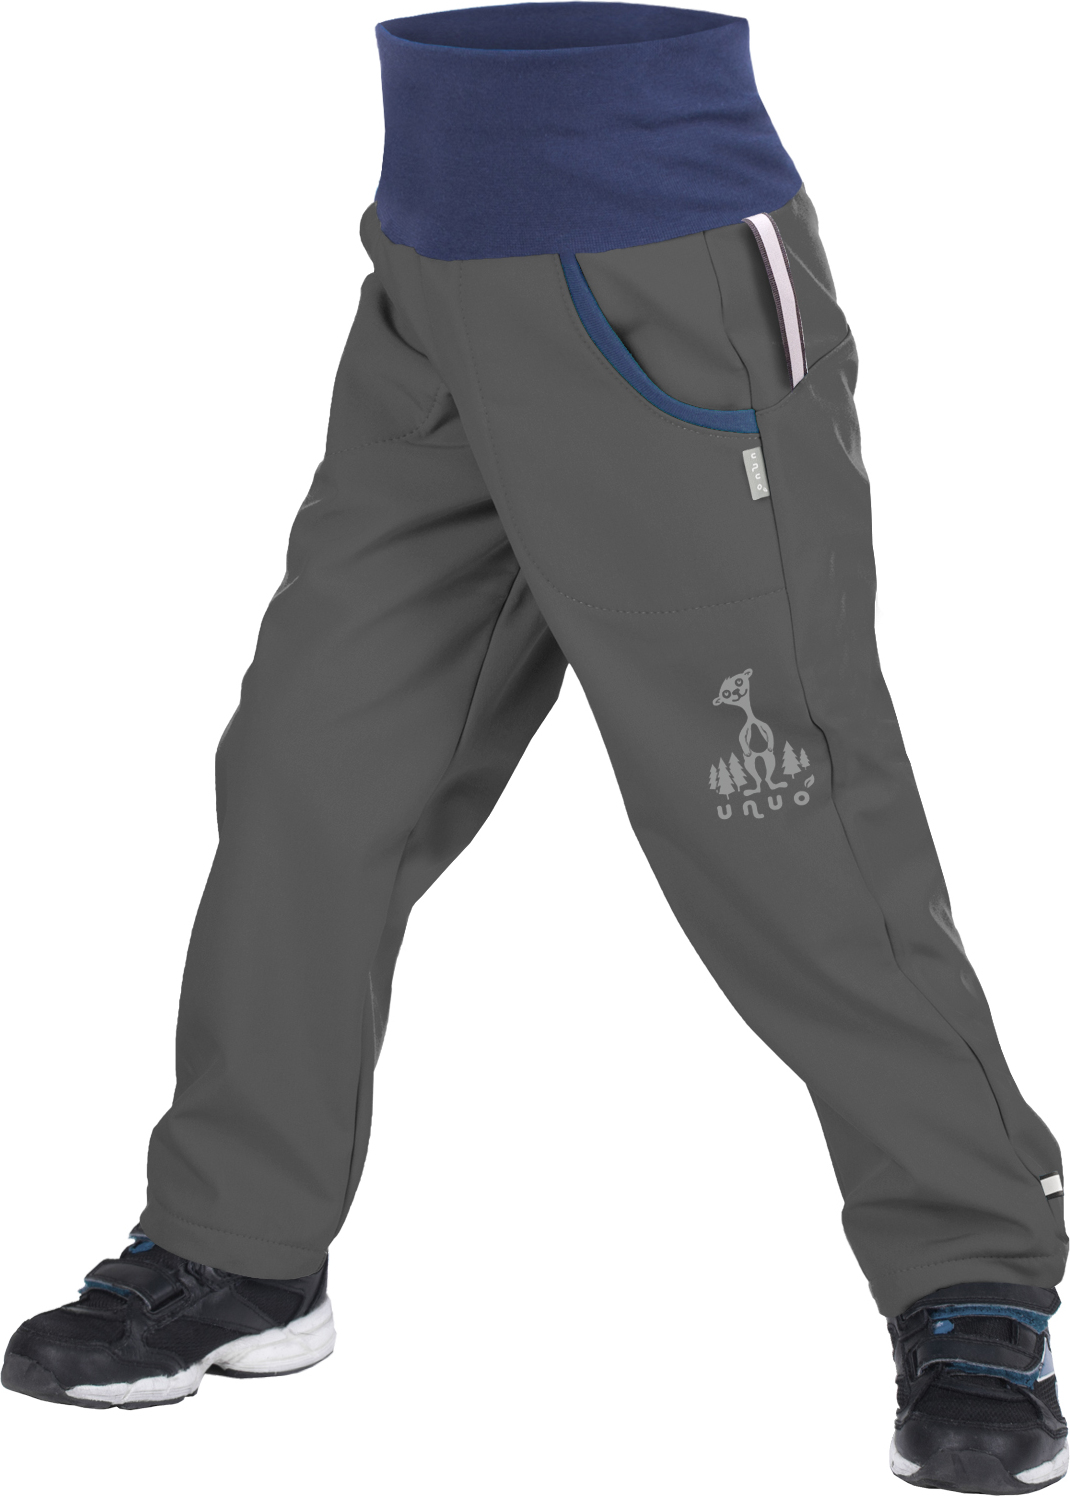 Dětské softshellové kalhoty UNUO s fleecem Antracitové + reflexní obrázek Evžen (Softshell kids trousers) Velikost: 128/134